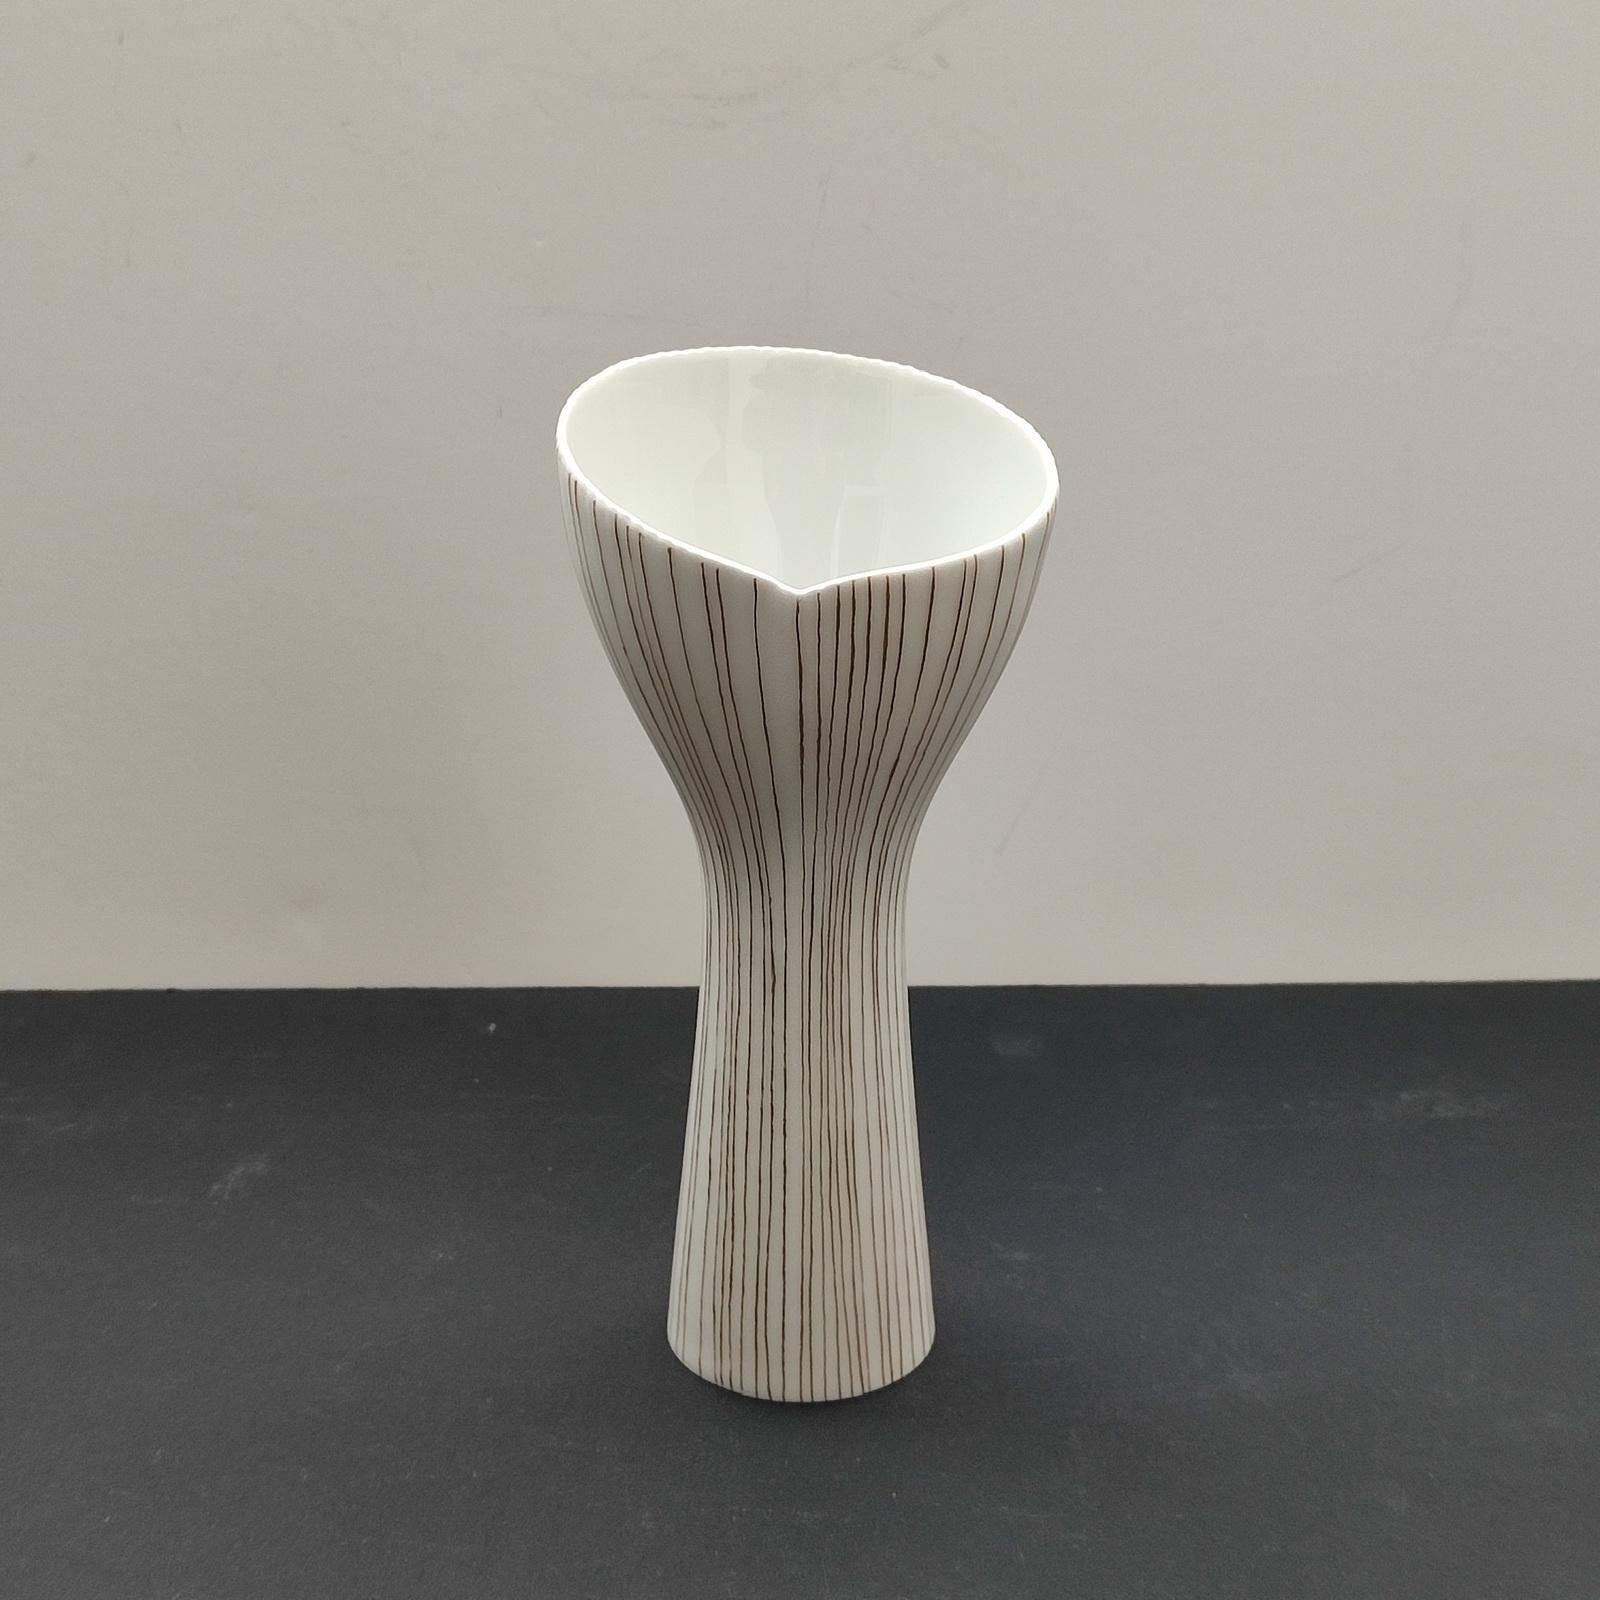 Tapio Wirkkala für Rosenthal, Deutschland
Weithalsige Vase aus weißem Porzellan, gerippter Rand, handbemalt mit feinen Goldlinien. Sehr guter gebrauchter Zustand.
Abmessungen:
Höhe 17 cm [6 3/4